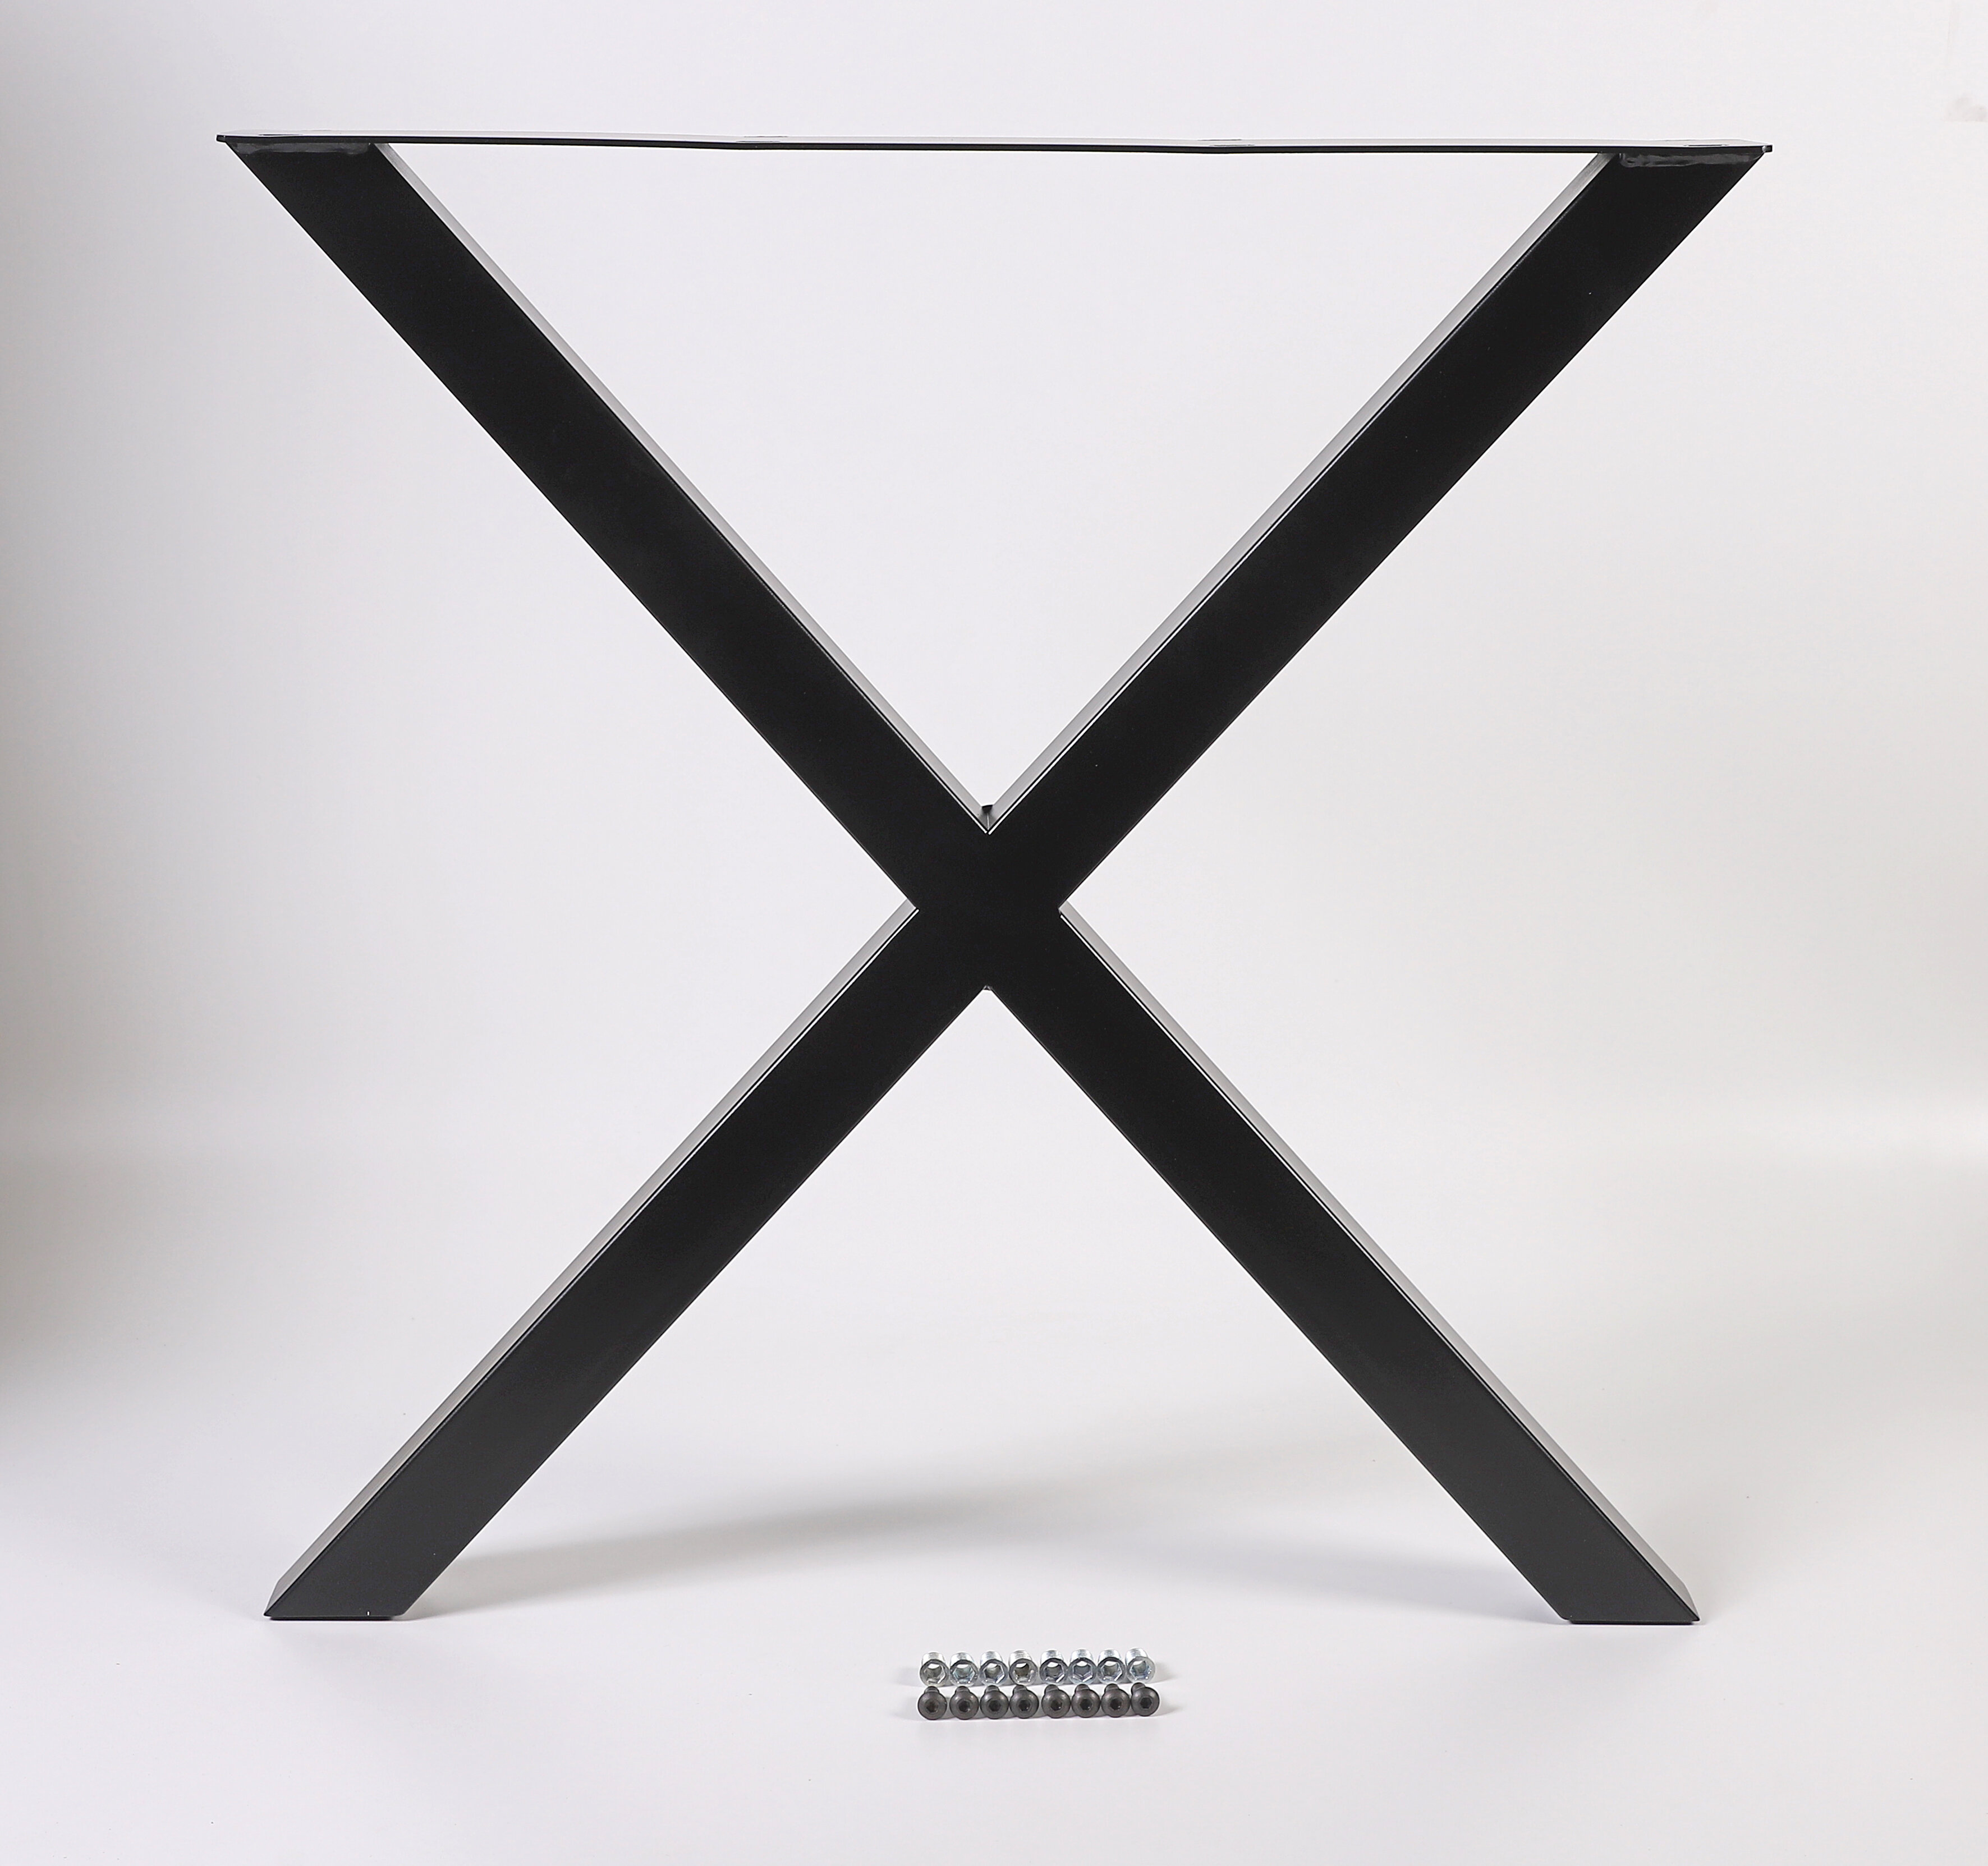 Tischuntergestell X-Form